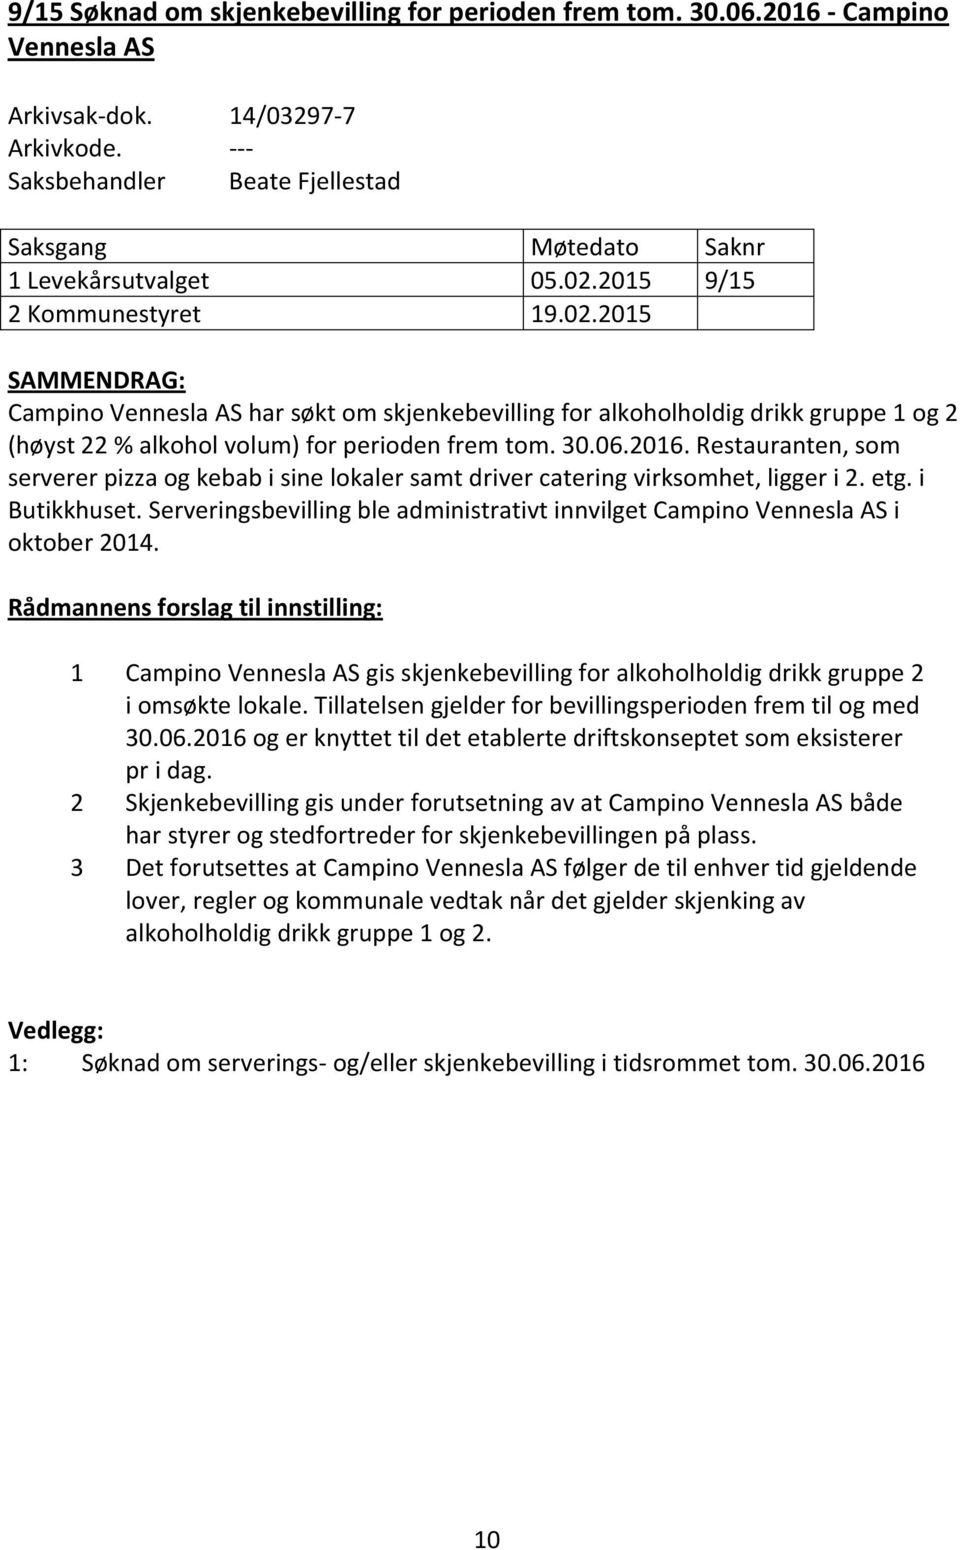 2015 9/15 2 Kommunestyret 19.02.2015 SAMMENDRAG: Campino Vennesla AS har søkt om skjenkebevilling for alkoholholdig drikk gruppe 1 og 2 (høyst 22 % alkohol volum) for perioden frem tom. 30.06.2016.